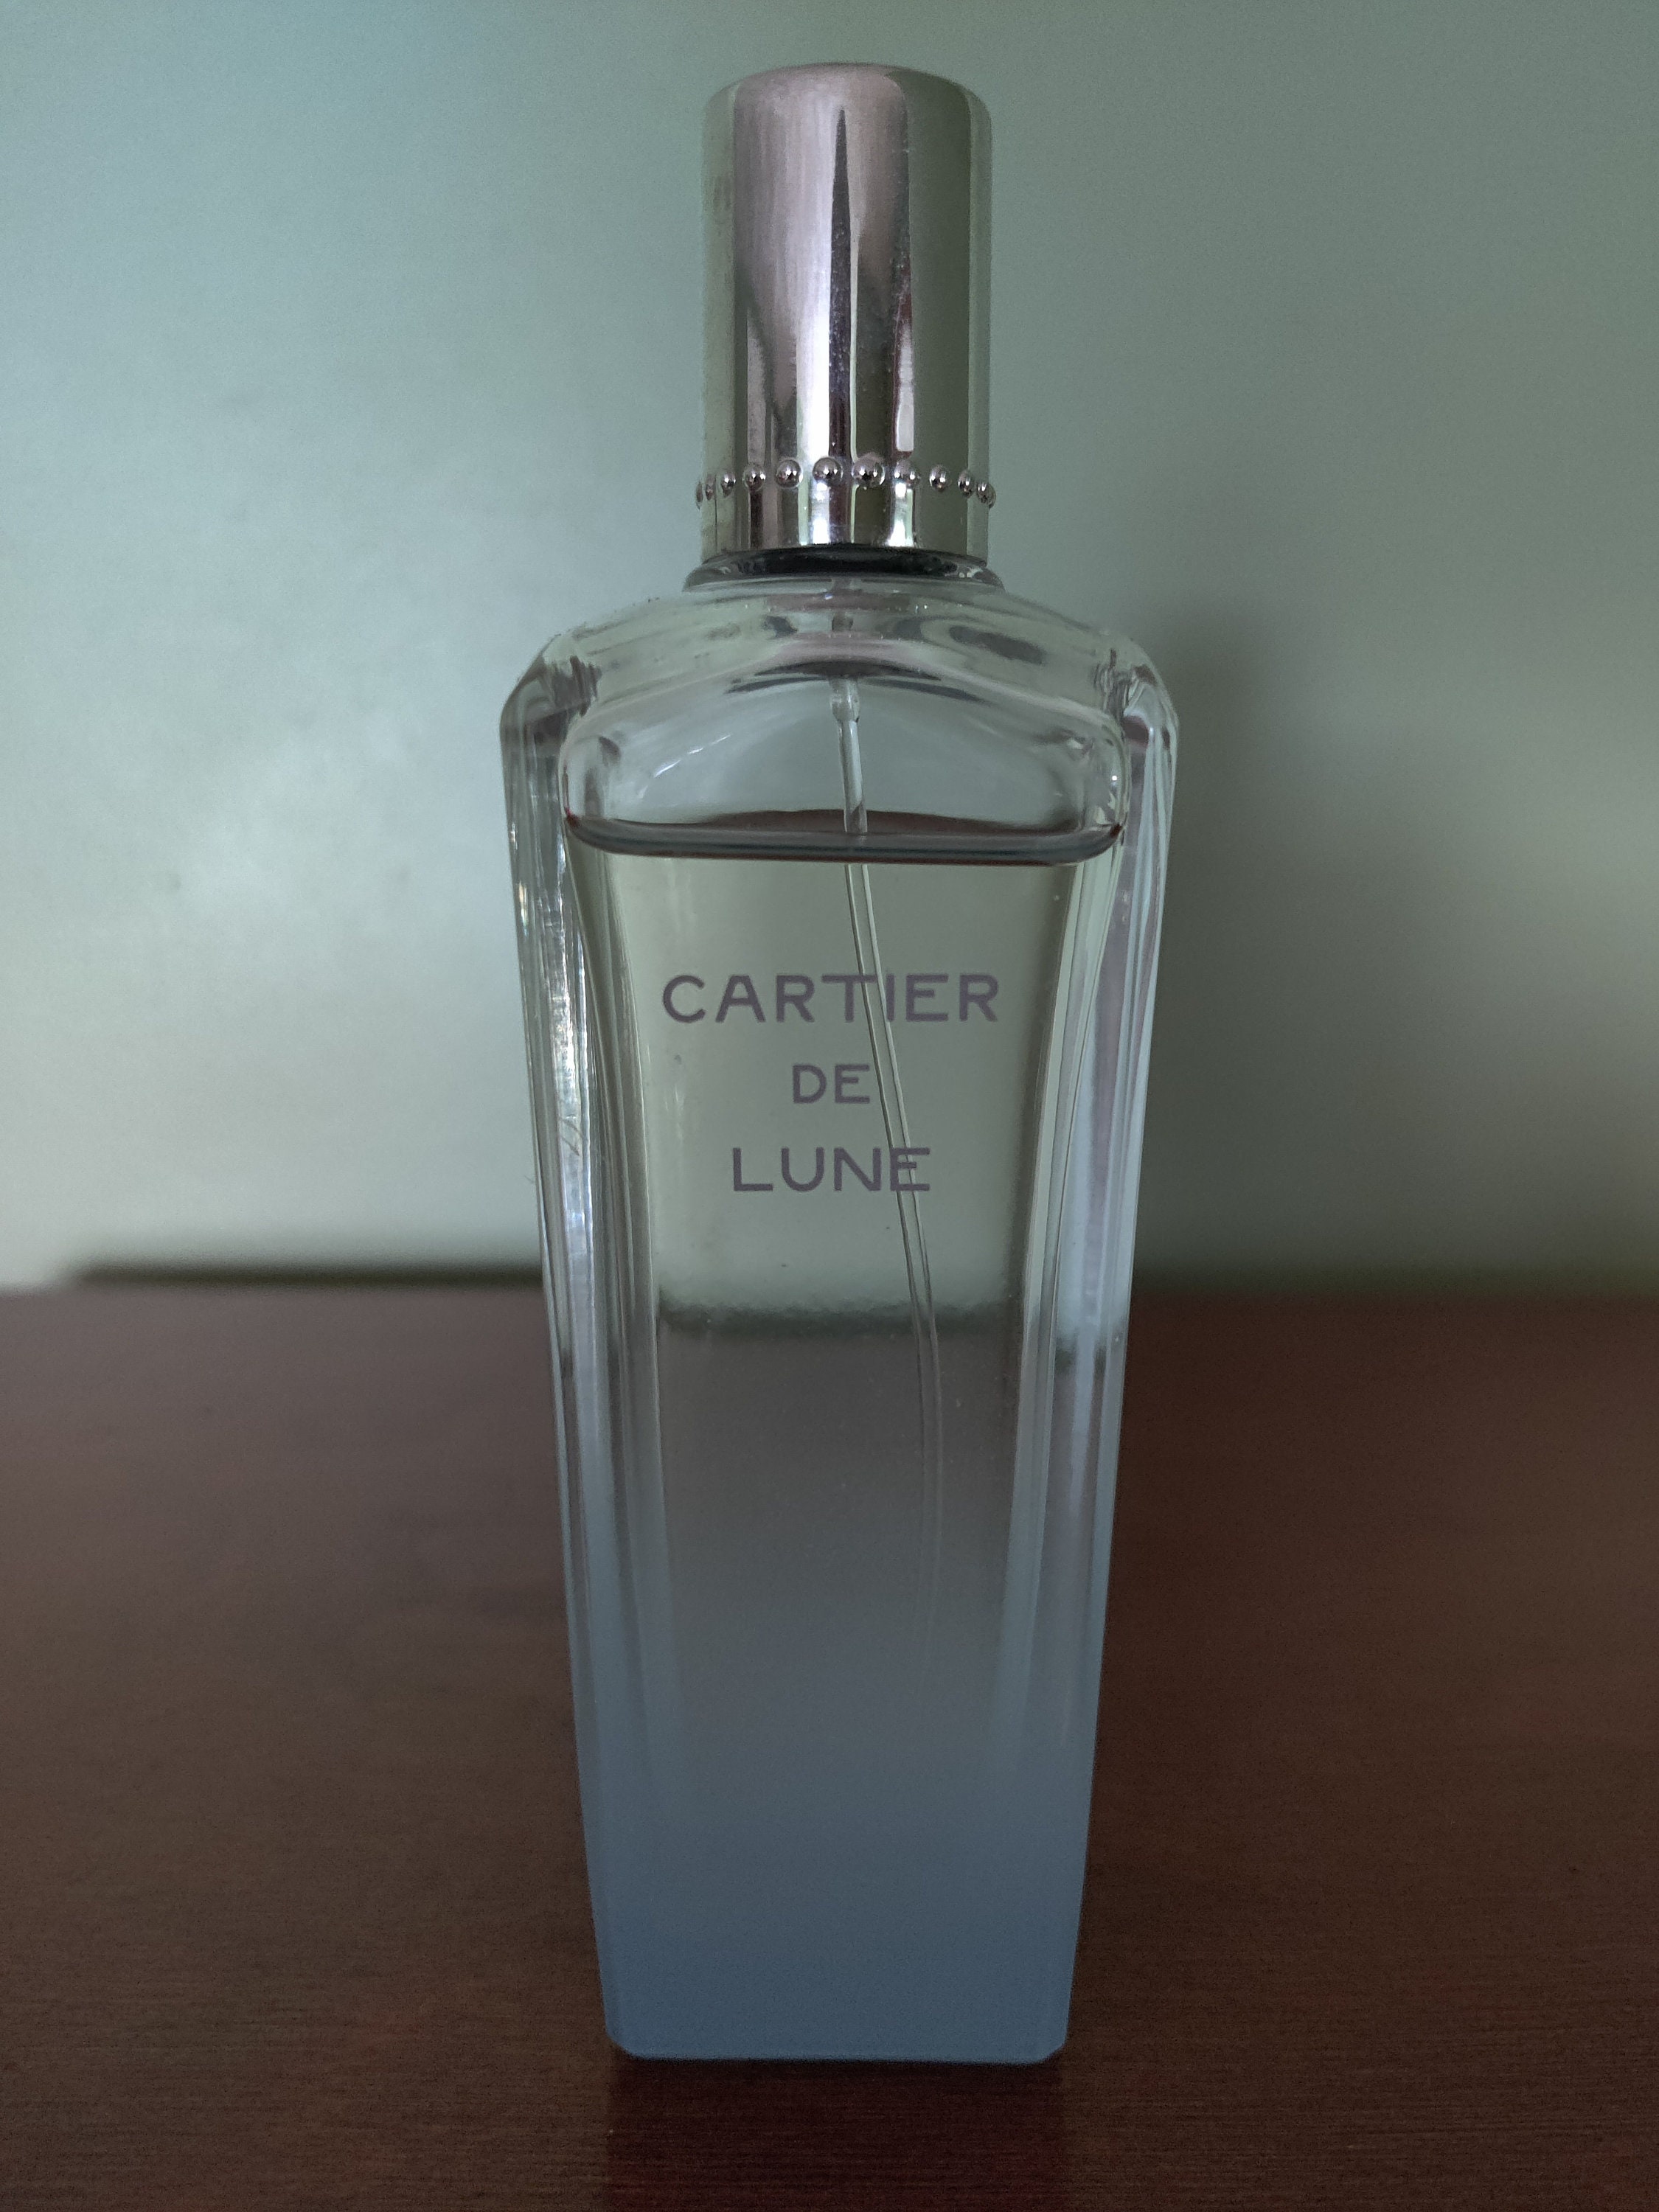 Ô de Lancôme Lancôme perfume - a fragrance for women 1969